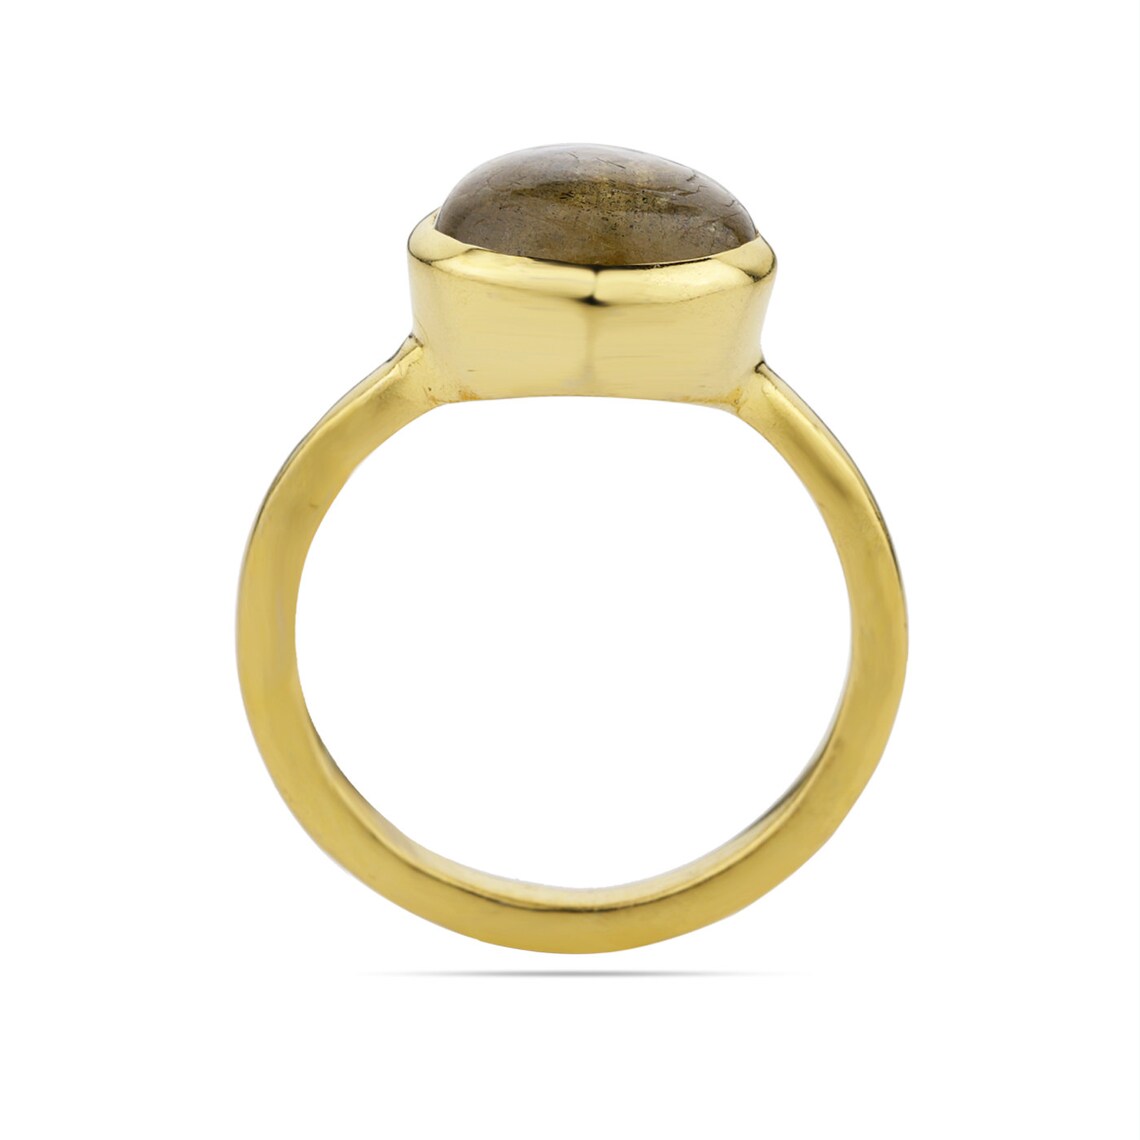 Labradorite Oval Ring, Blue Labradorite Gemstone Ring - Stacking Ring- Delicate Ring - Labradorite Gold Ring